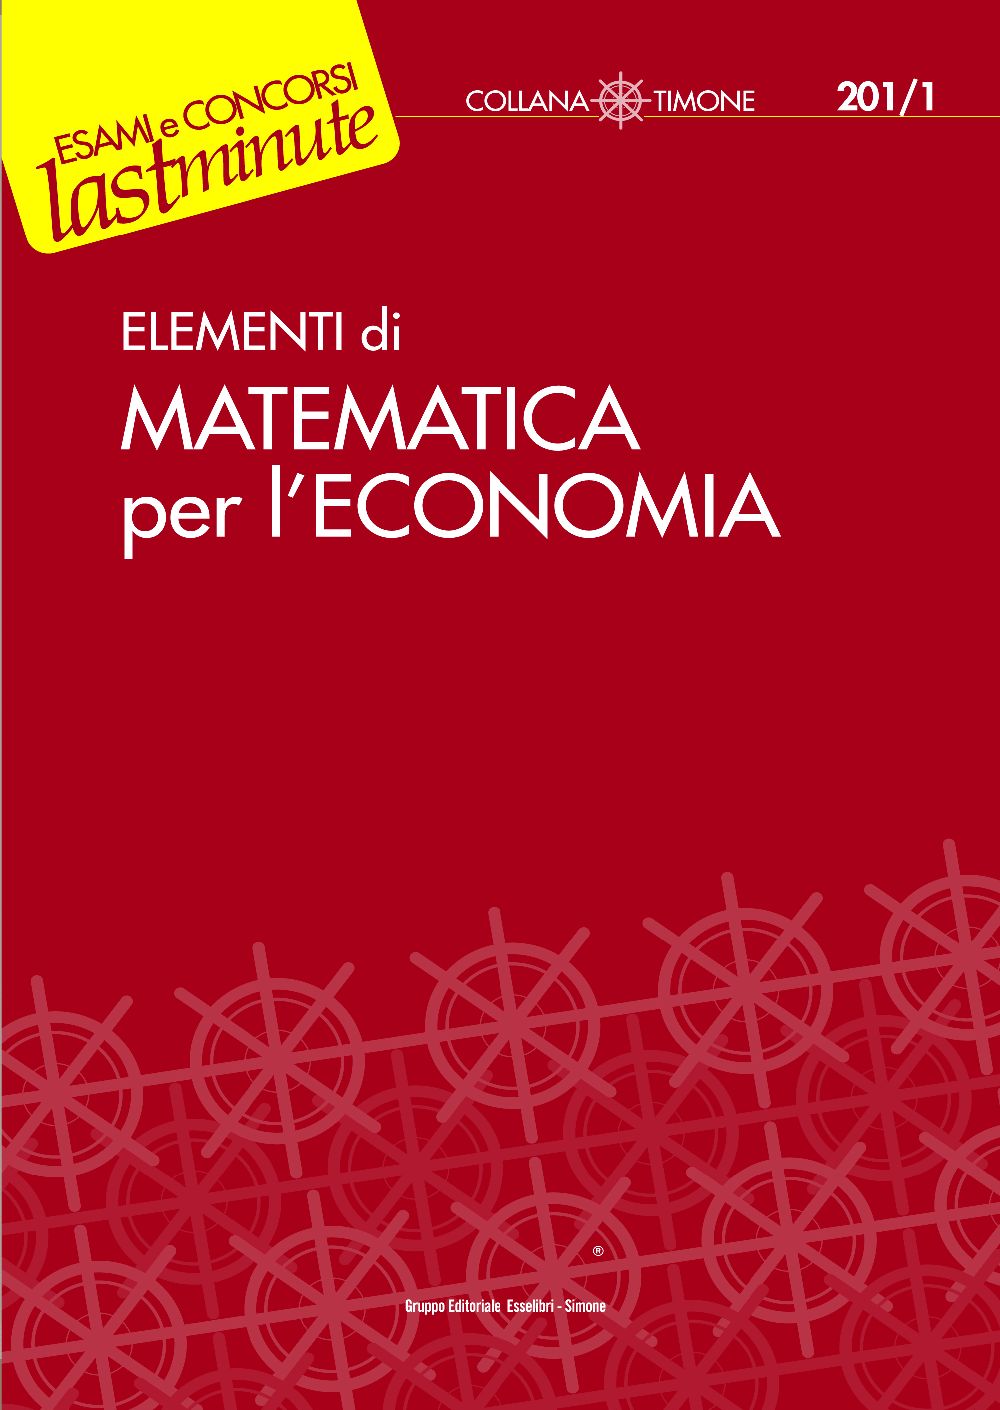 Matematica per l'economia - 201/1